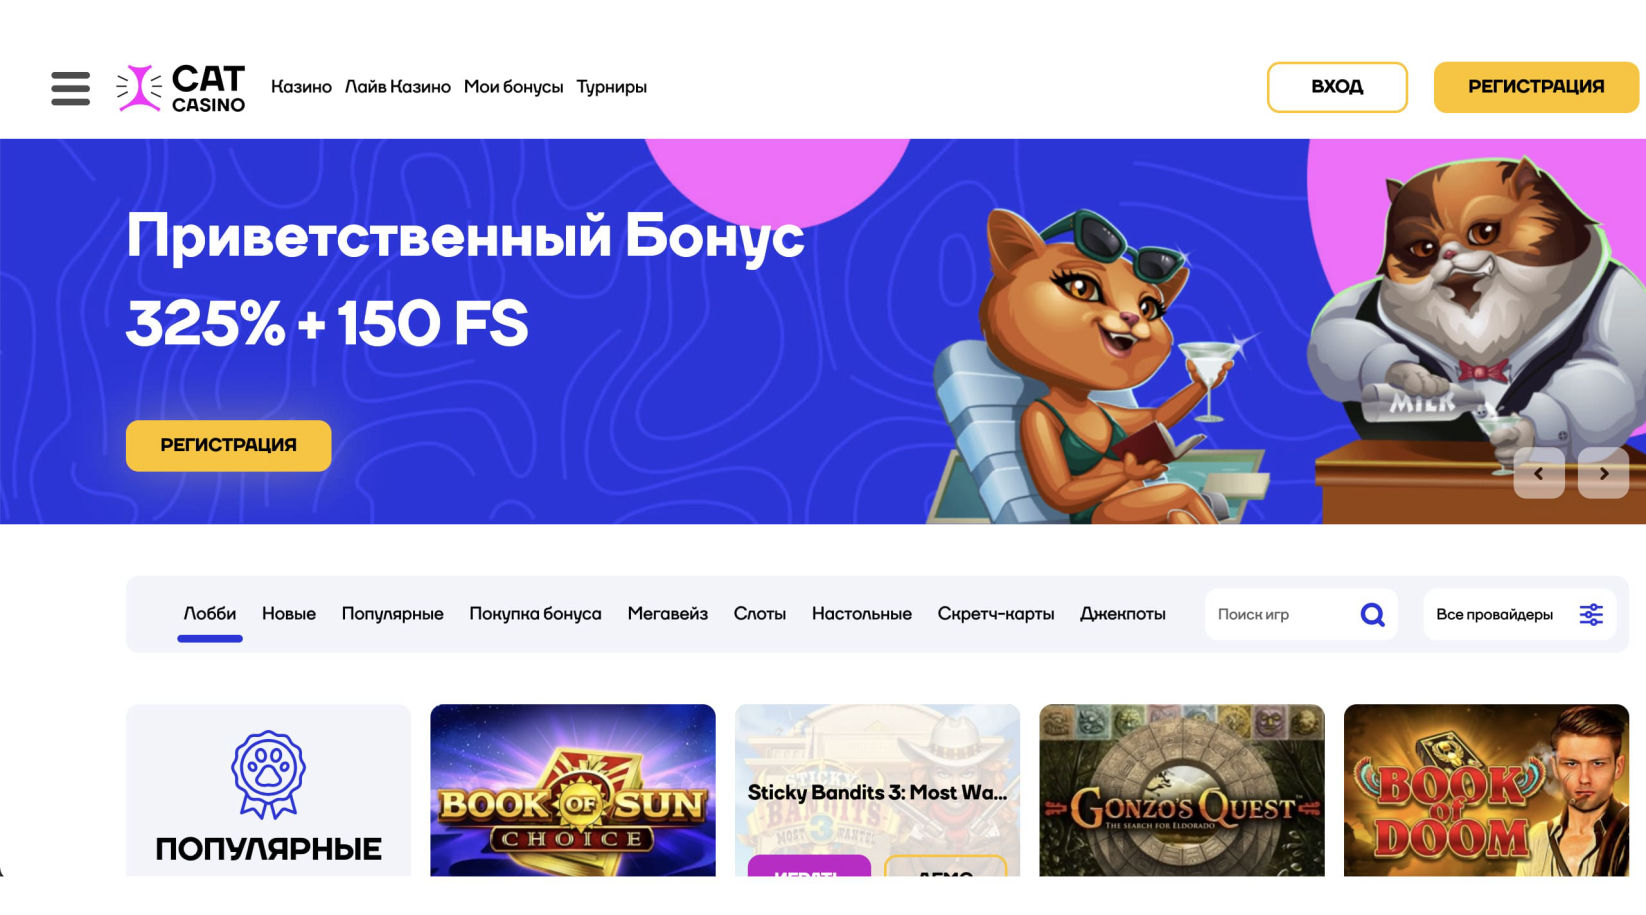 Кэт казино официальный сайт — играть в онлайн